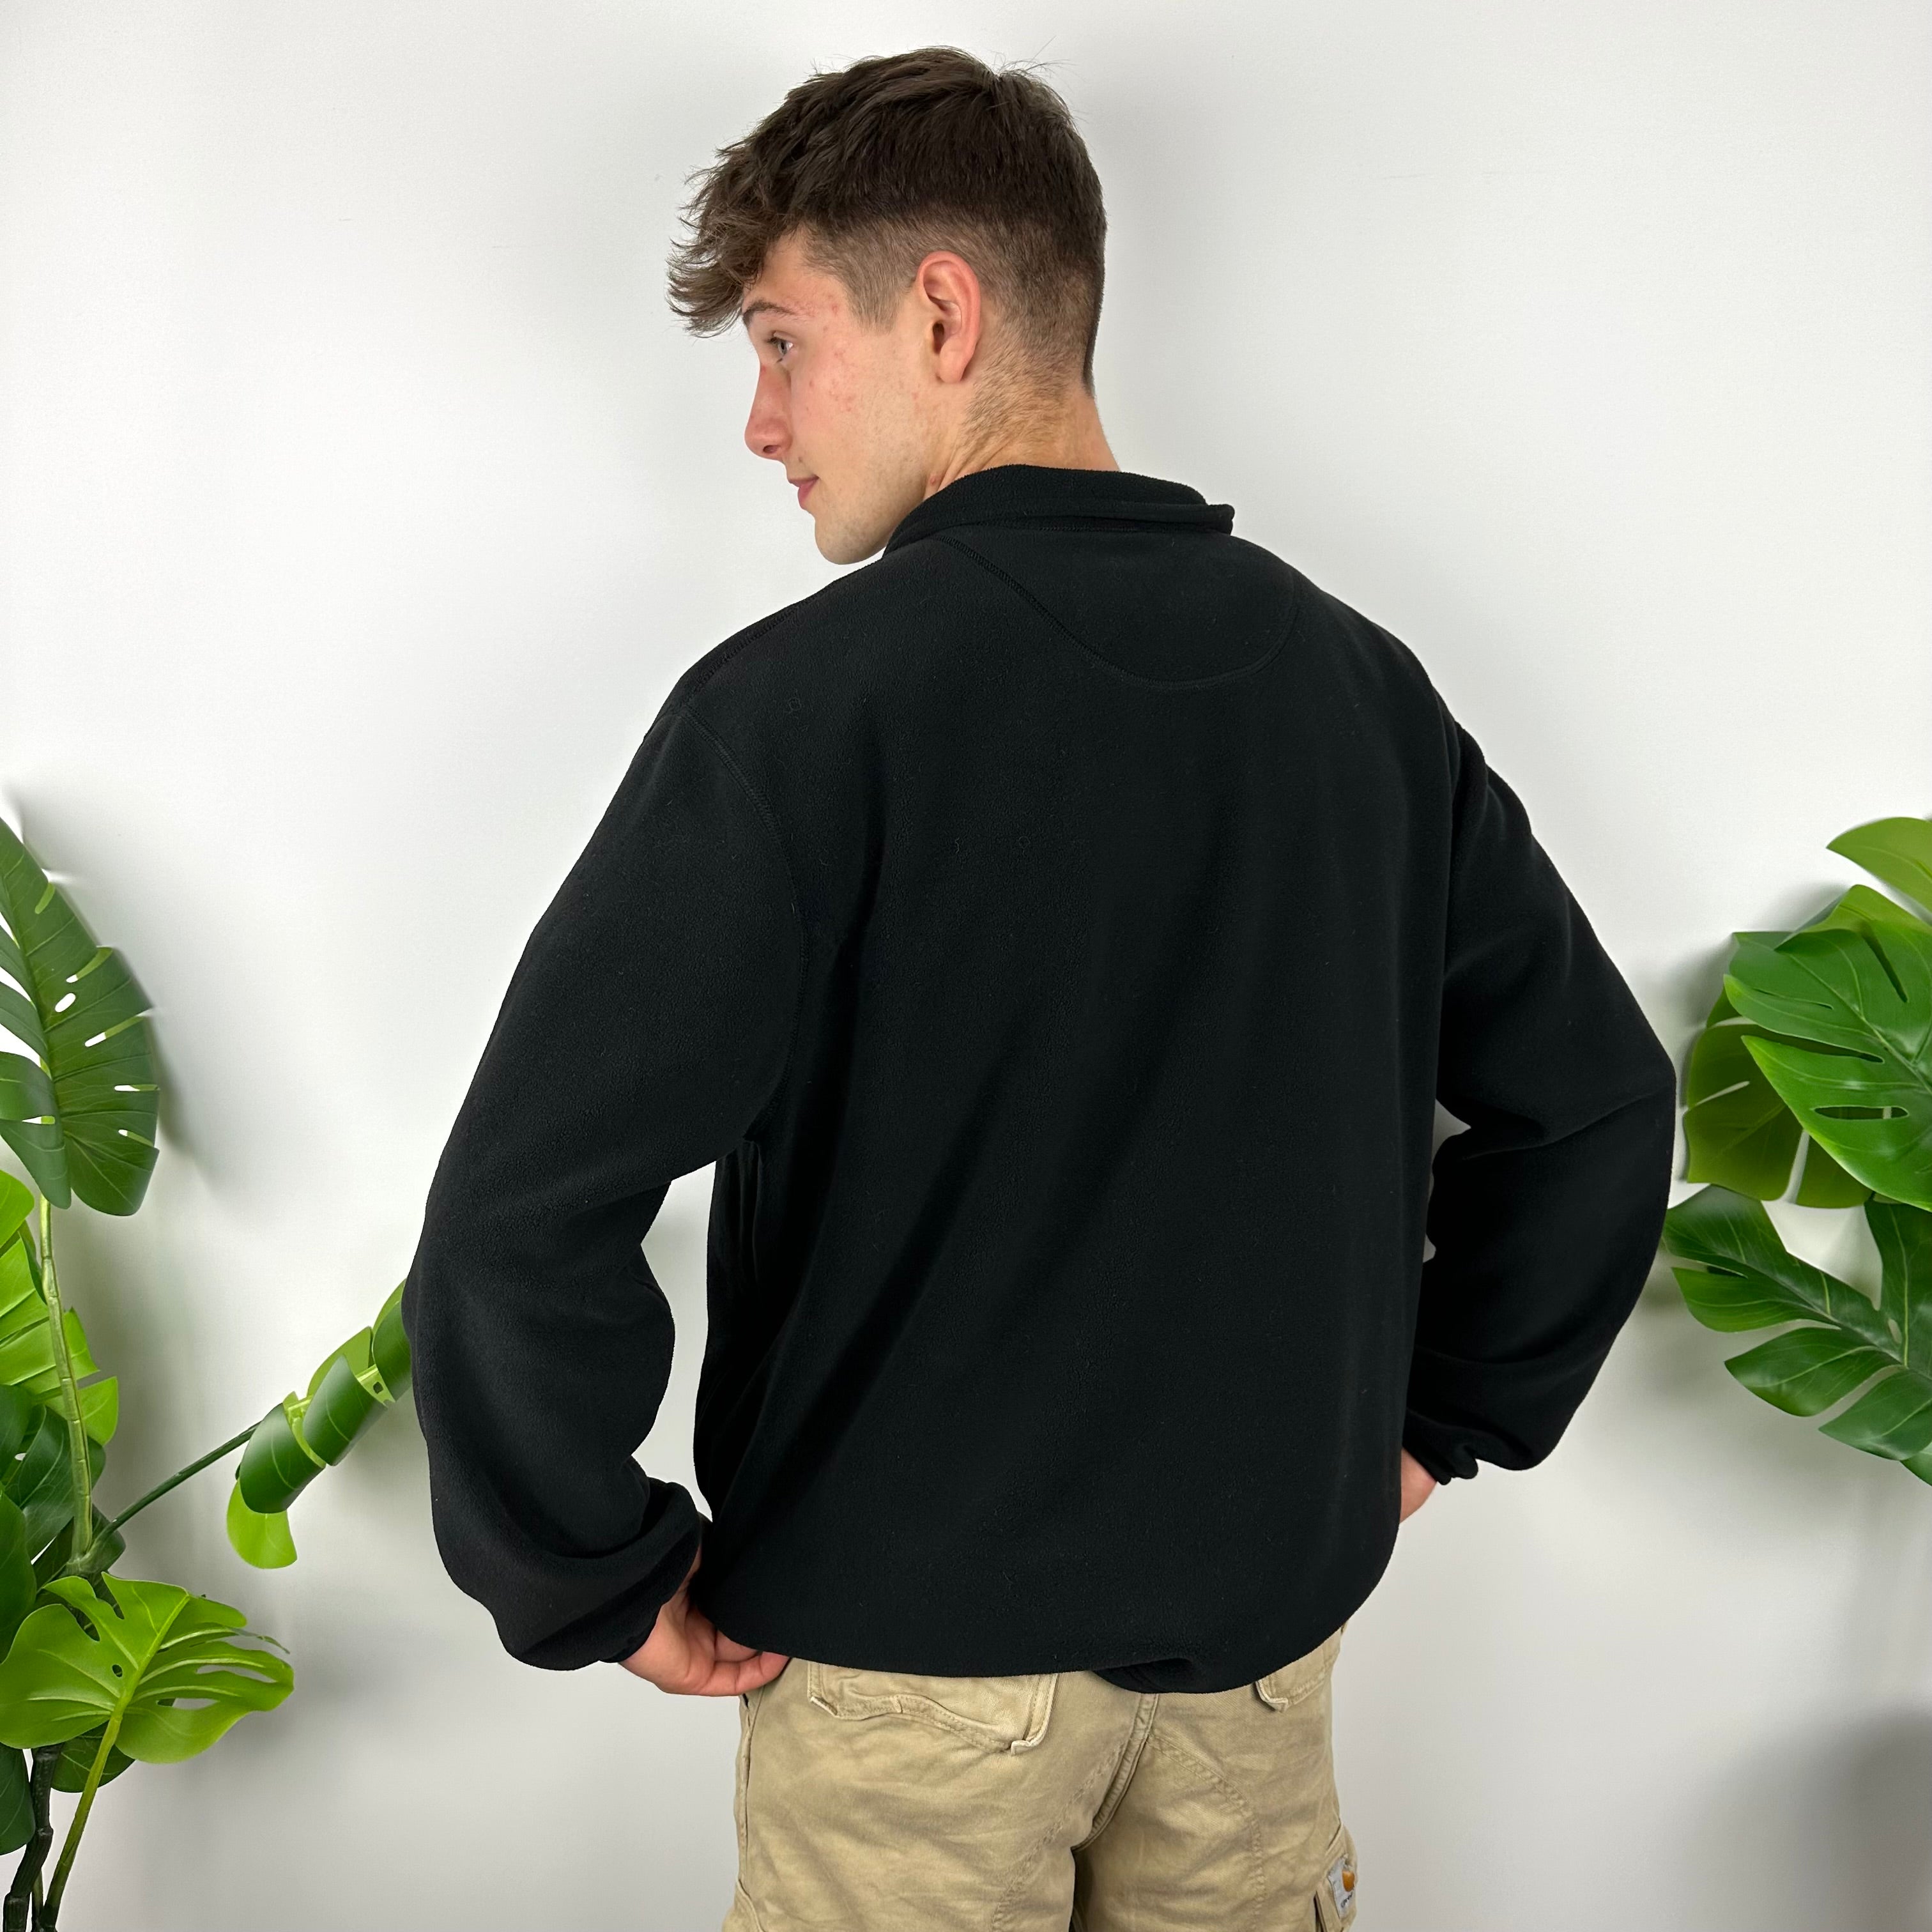 Polo Ralph Lauren Sport Black Embroidered Spell Out Teddy Bear Fleece Quarter Zip Sweatshirt (XL)